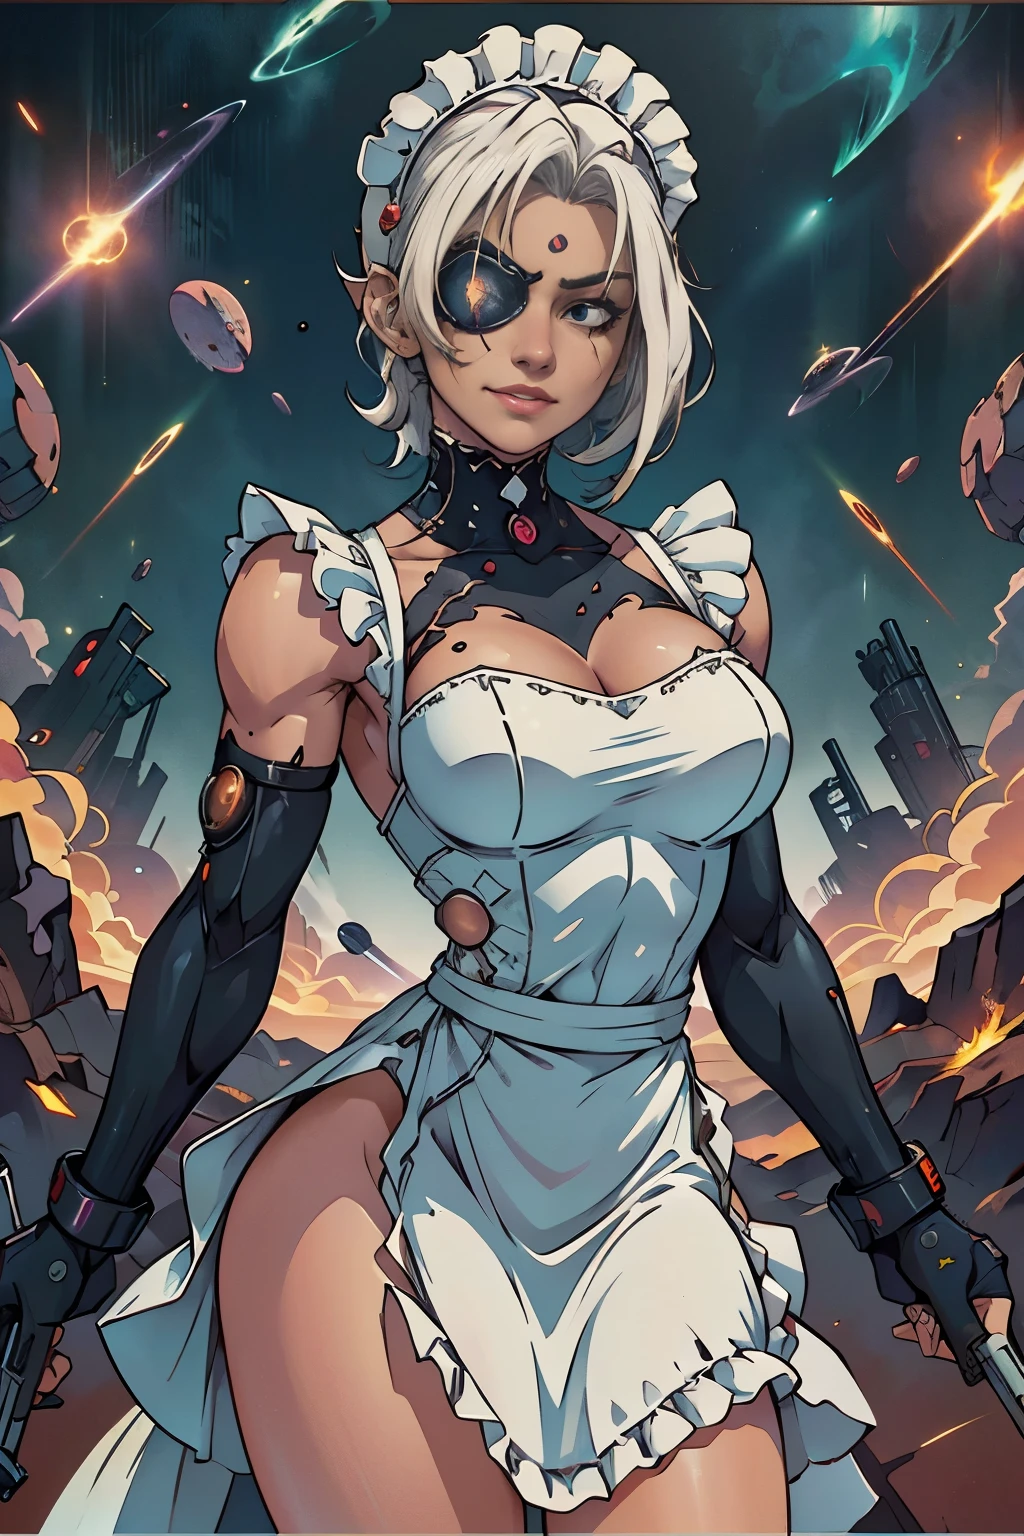 a beautiful cyborg female soldier wearing a 女僕裝, 短白髮, 肌肉發達的, 六塊肌, (女僕裝:1.8), (褶邊白色圍裙:1.4), 傷痕累累的臉, 眼罩, 左手是雷射槍, (太空黑幫和槍戰:1.4), 傻笑的表情